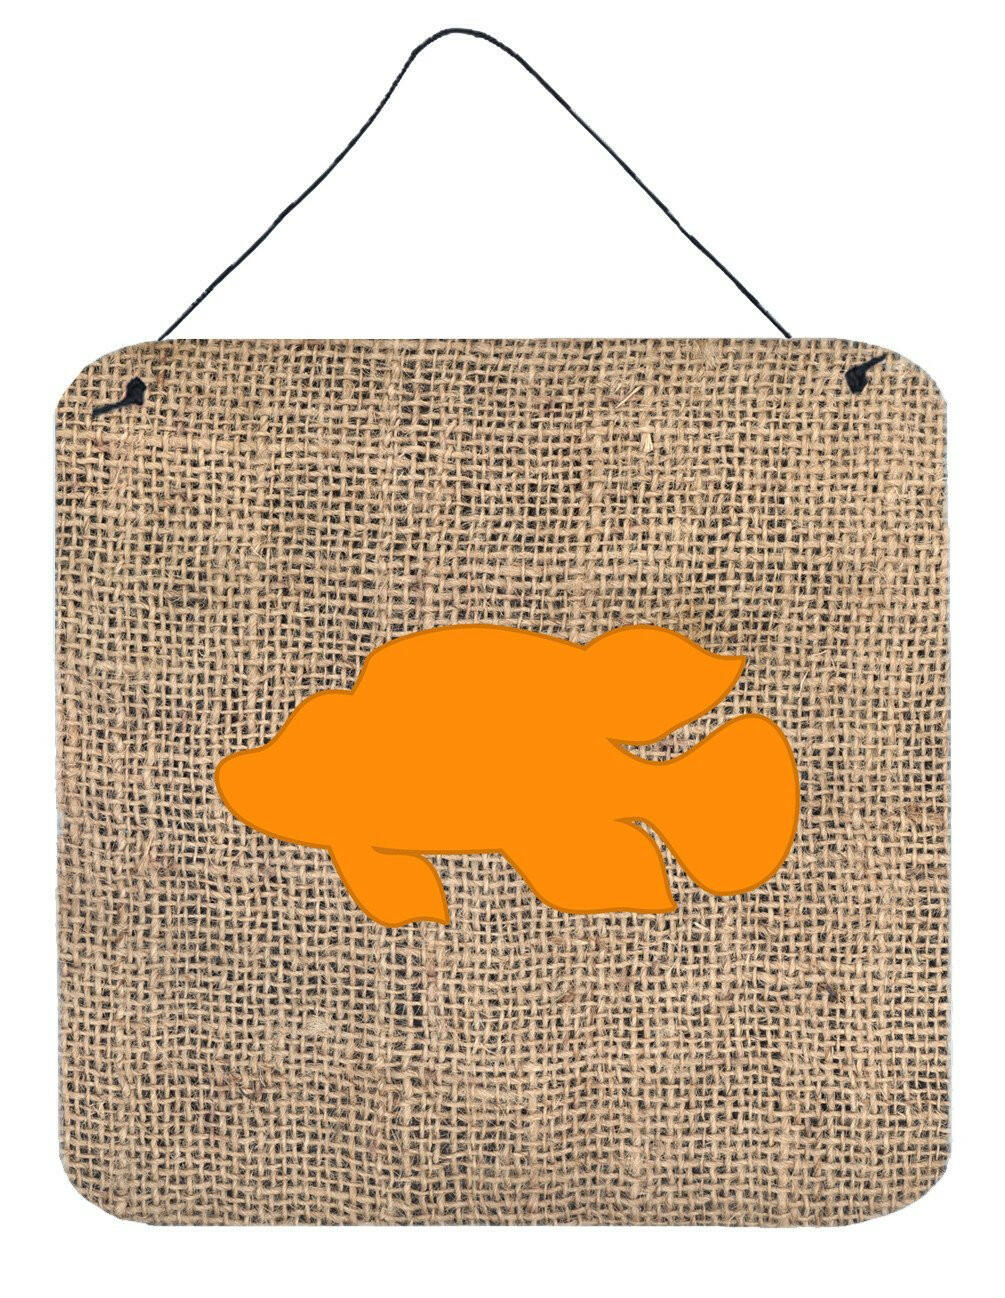 Fish - Tropical Fish Burlap and Orange Wall or Door Hanging Prints BB1013 by Caroline's Treasures